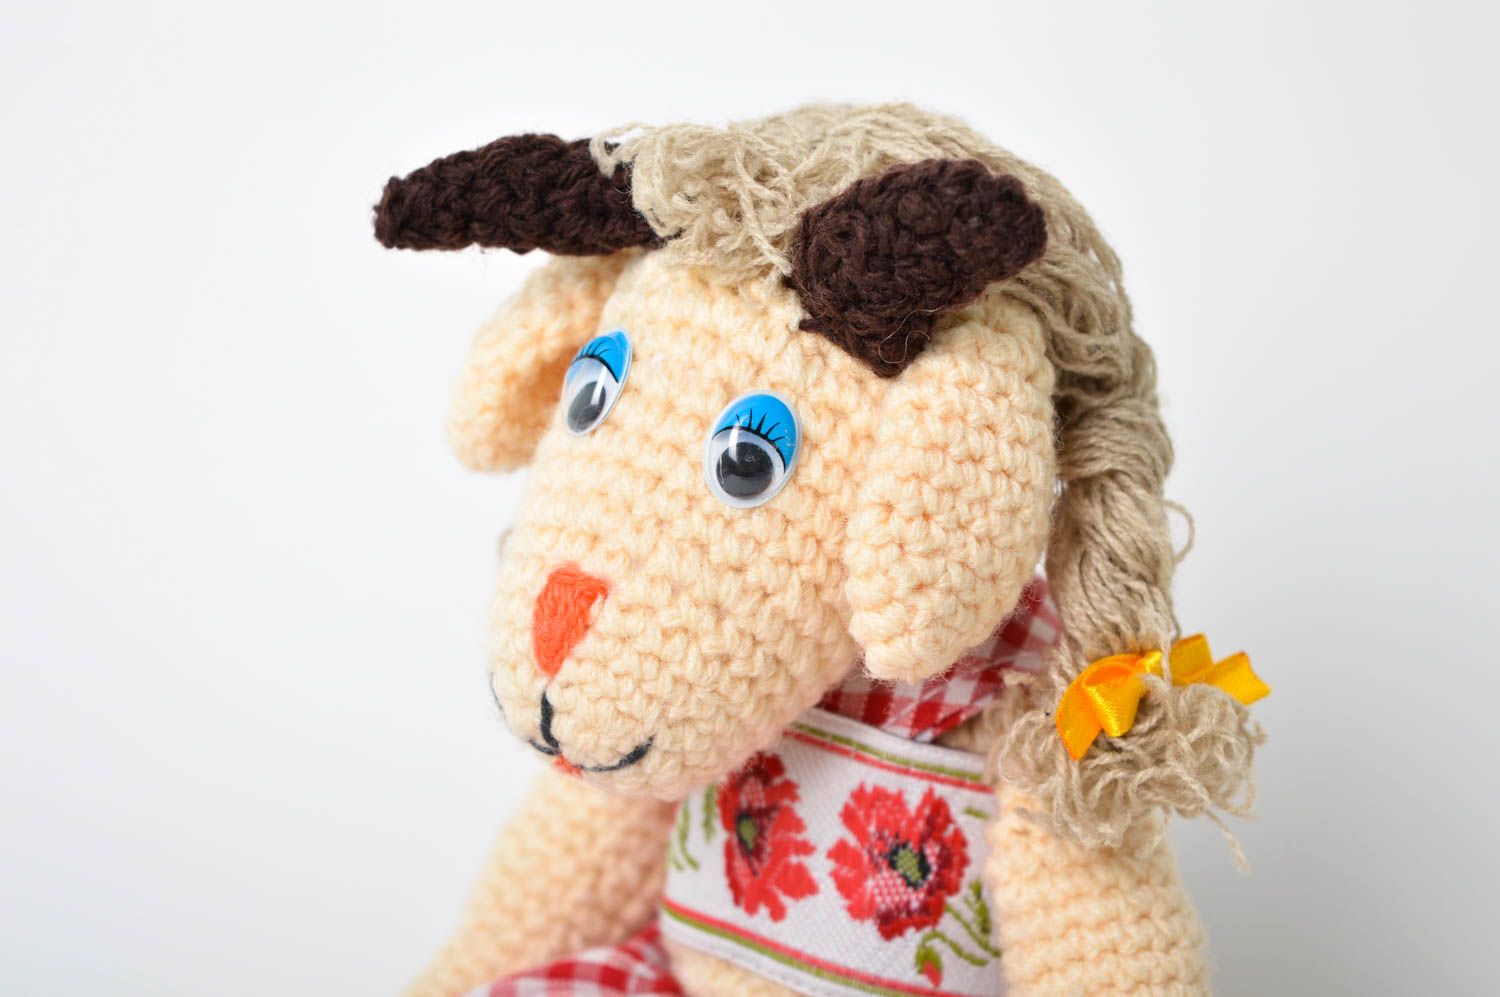 Handmade Ziege Kuscheltier Geburtstag Geschenk Kuschel Tier Textil Spielzeug foto 3